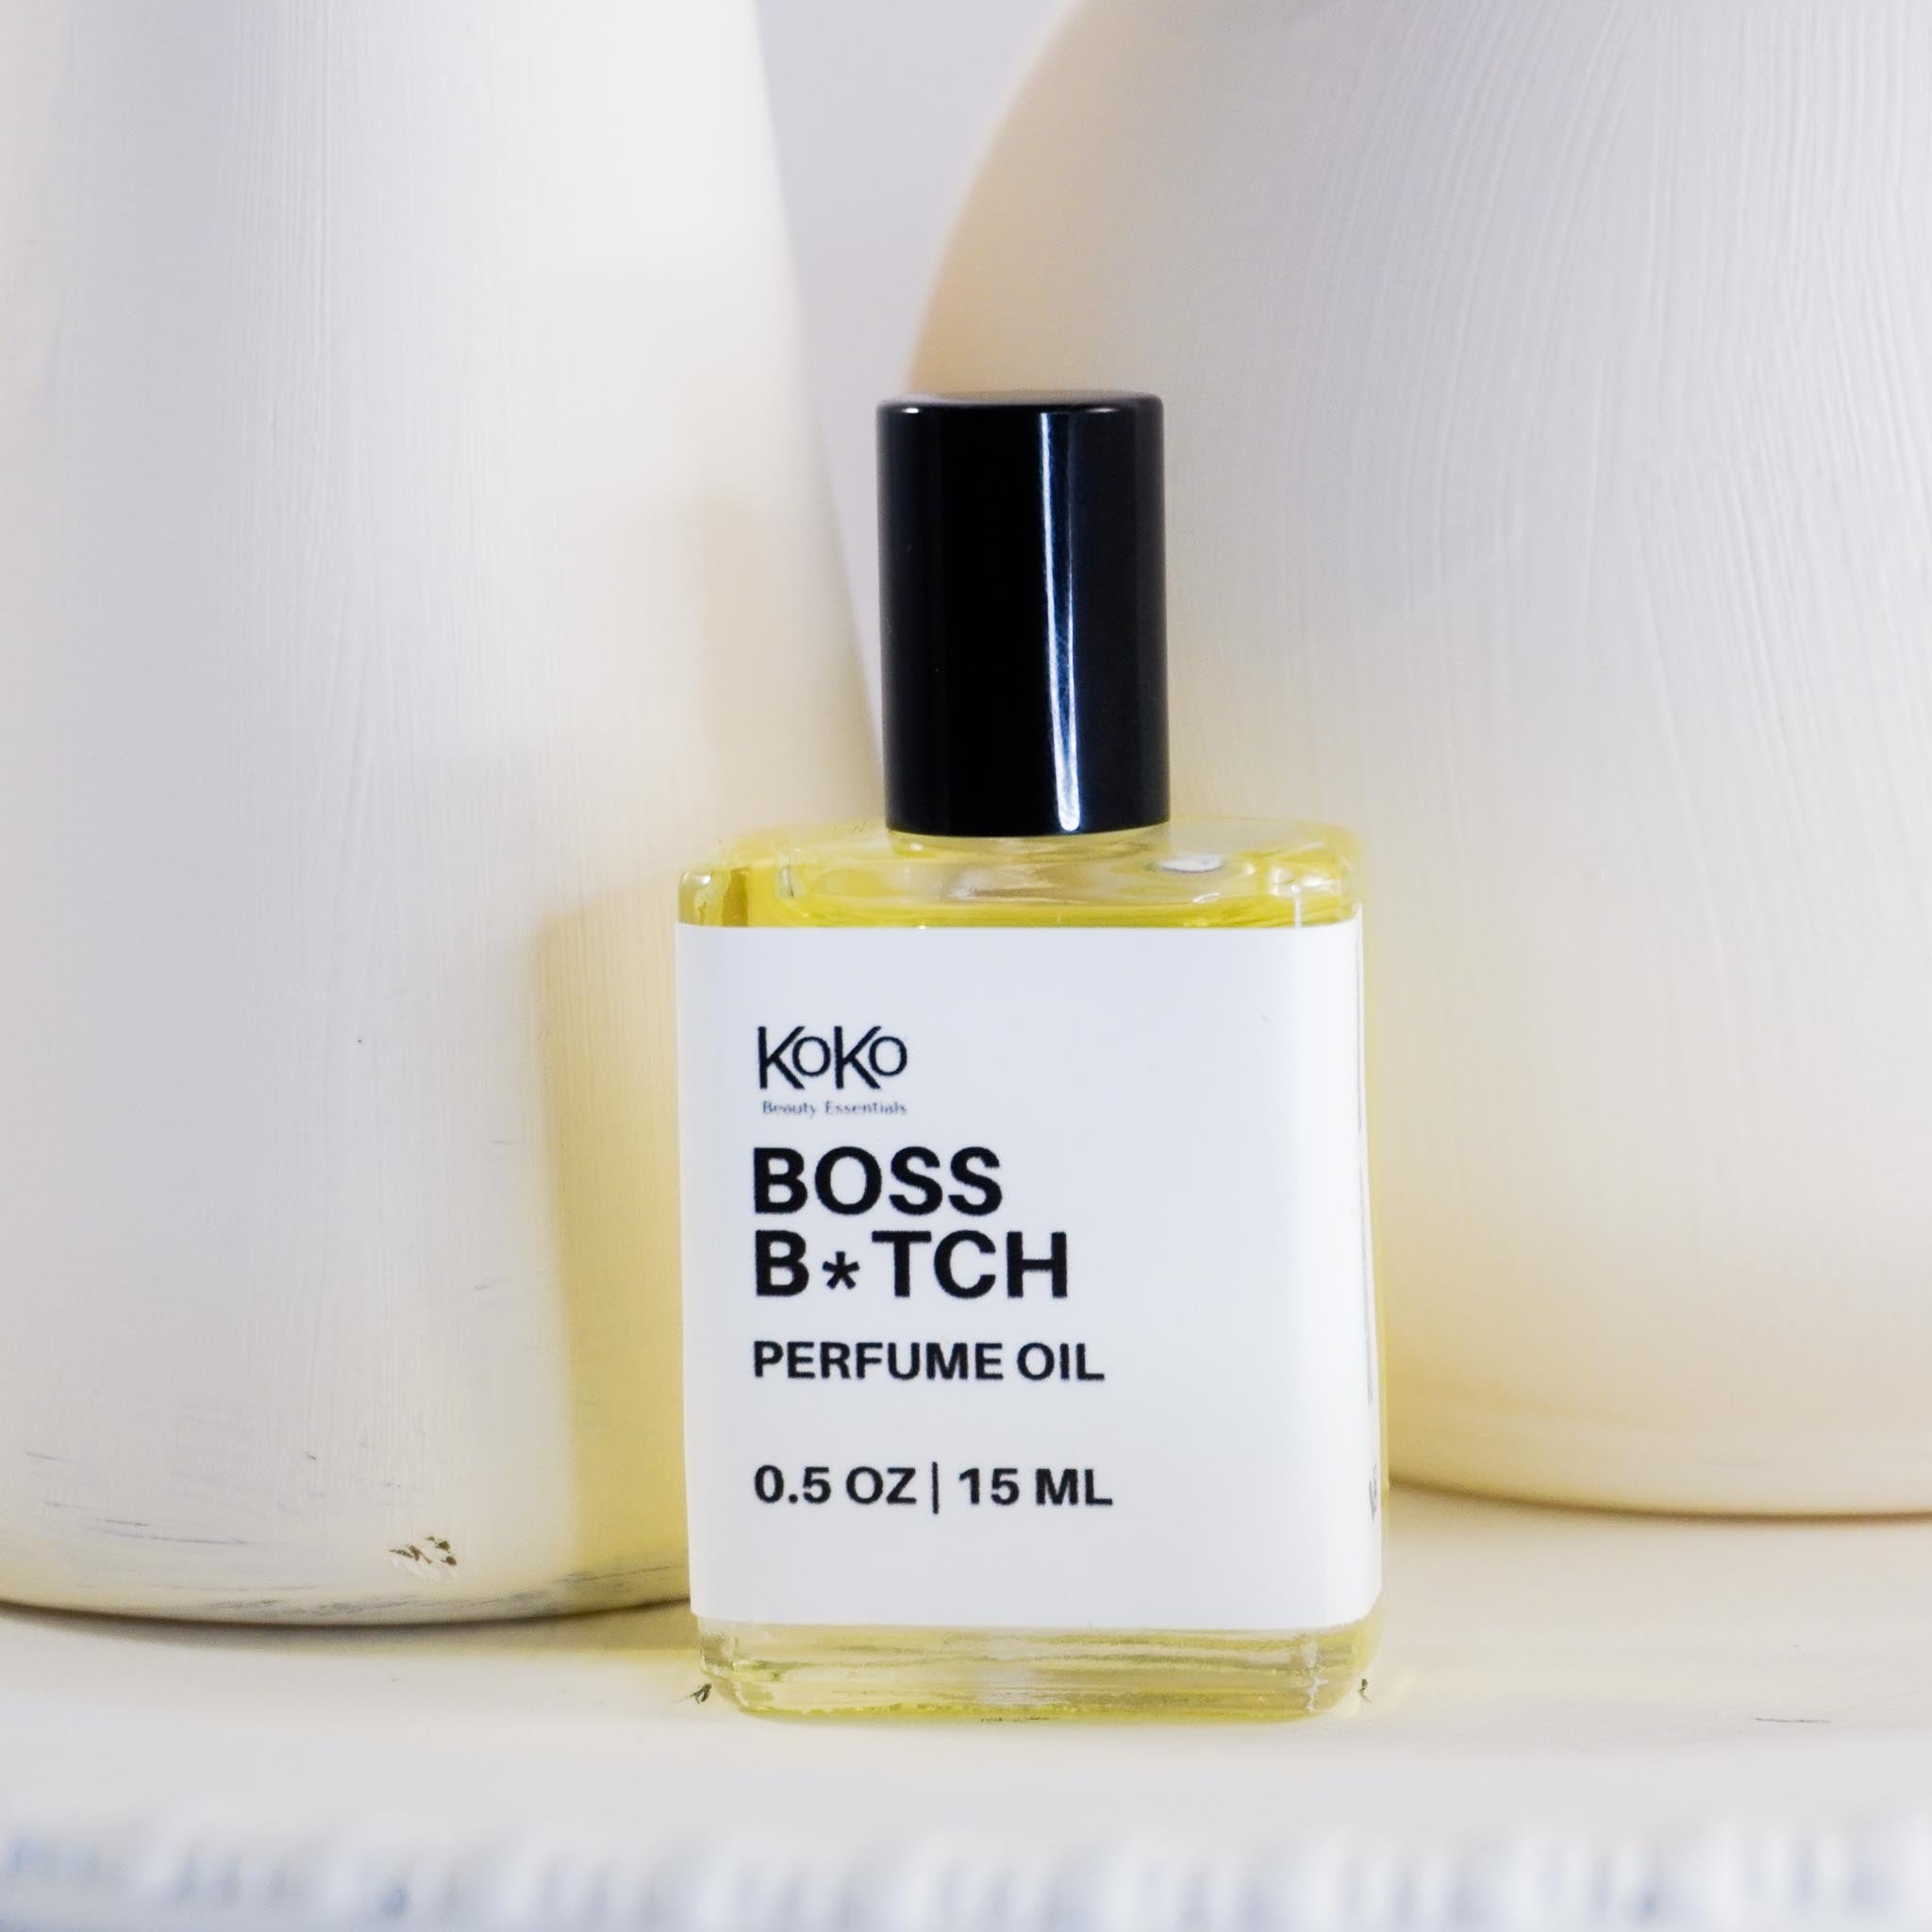 Boss B*tch Perfume Oil